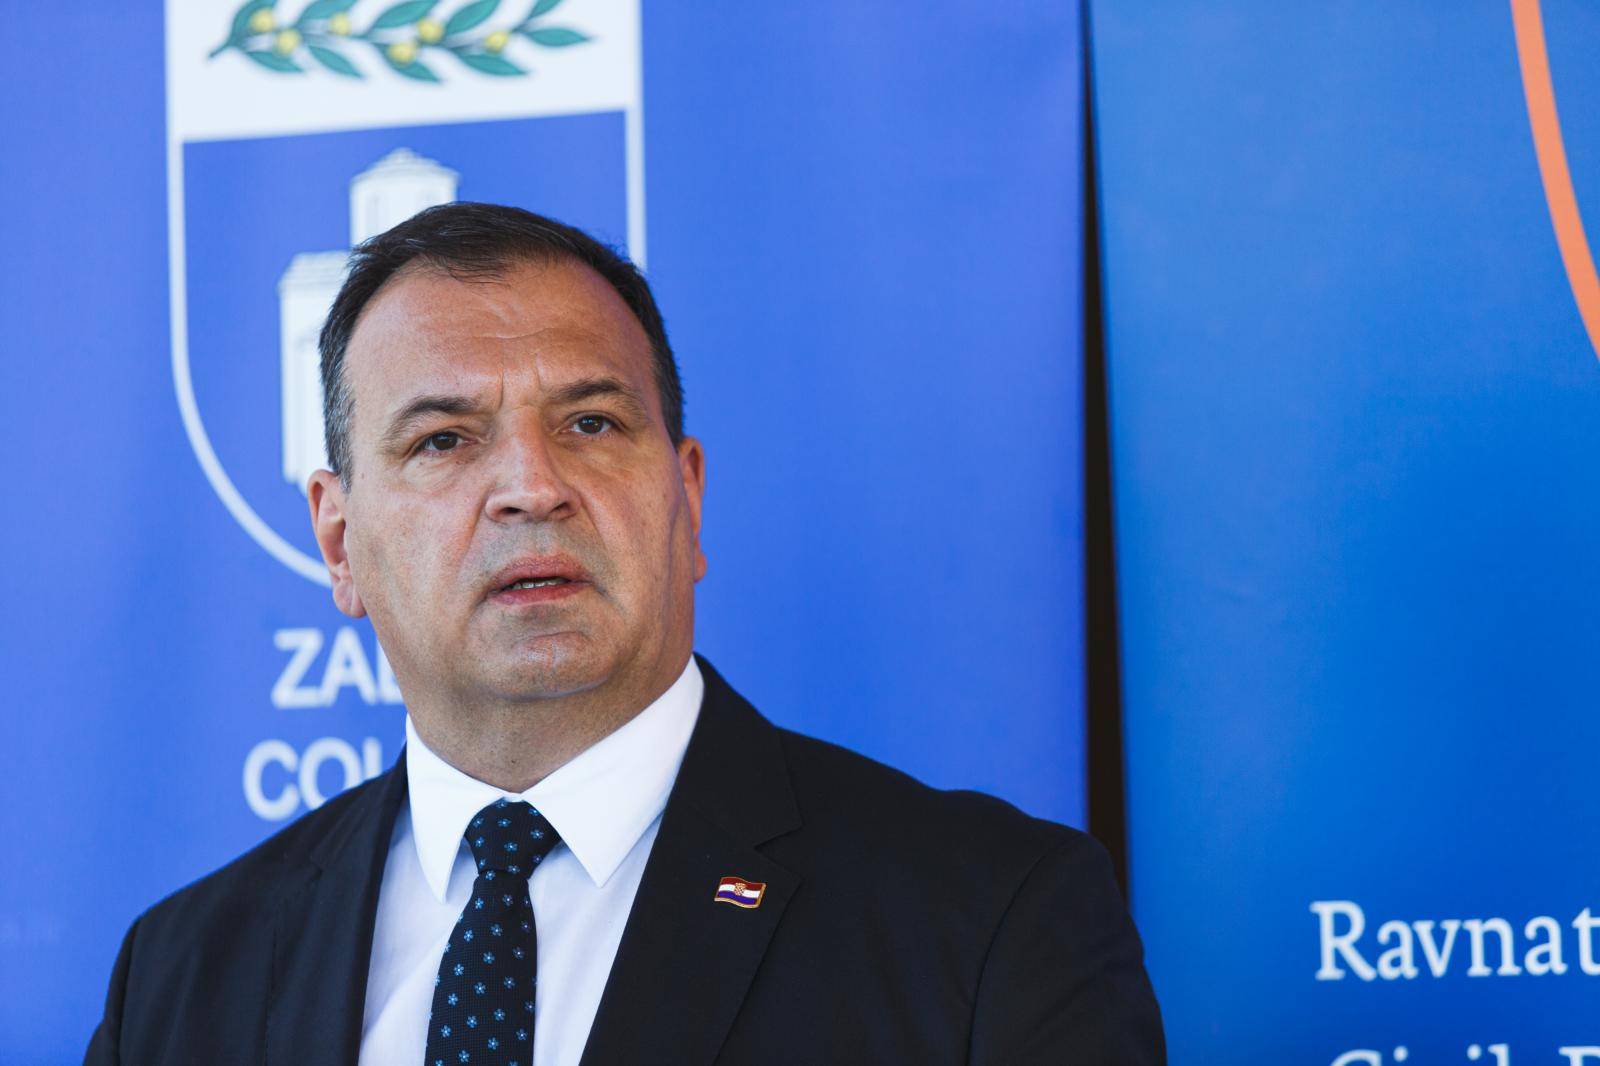 Ministar Beroš na konferenciji Stožera civilne zaštite Zadarske županije